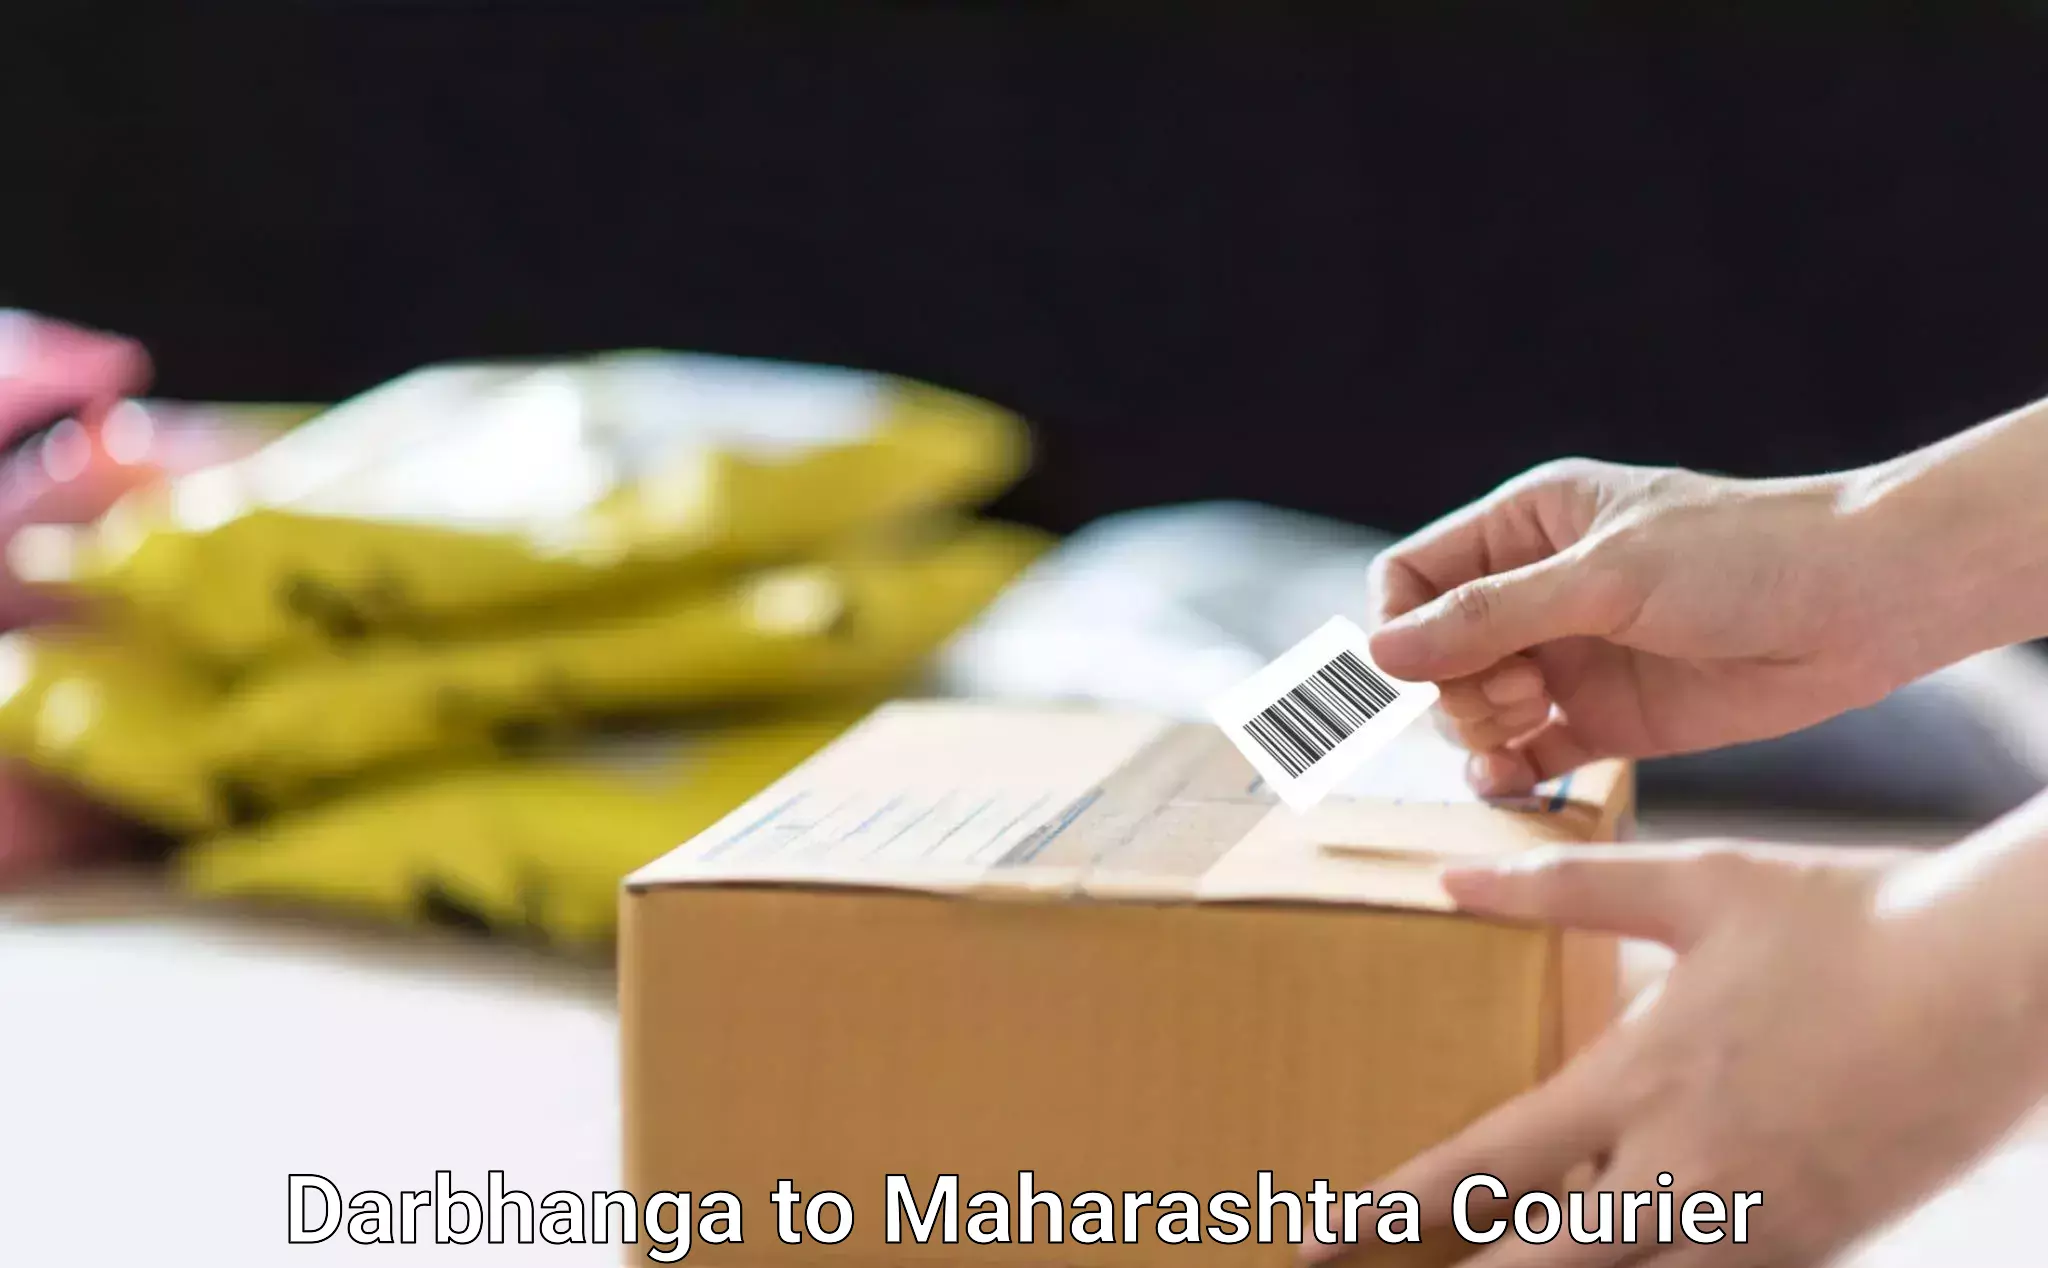 Reliable moving assistance Darbhanga to Maharashtra